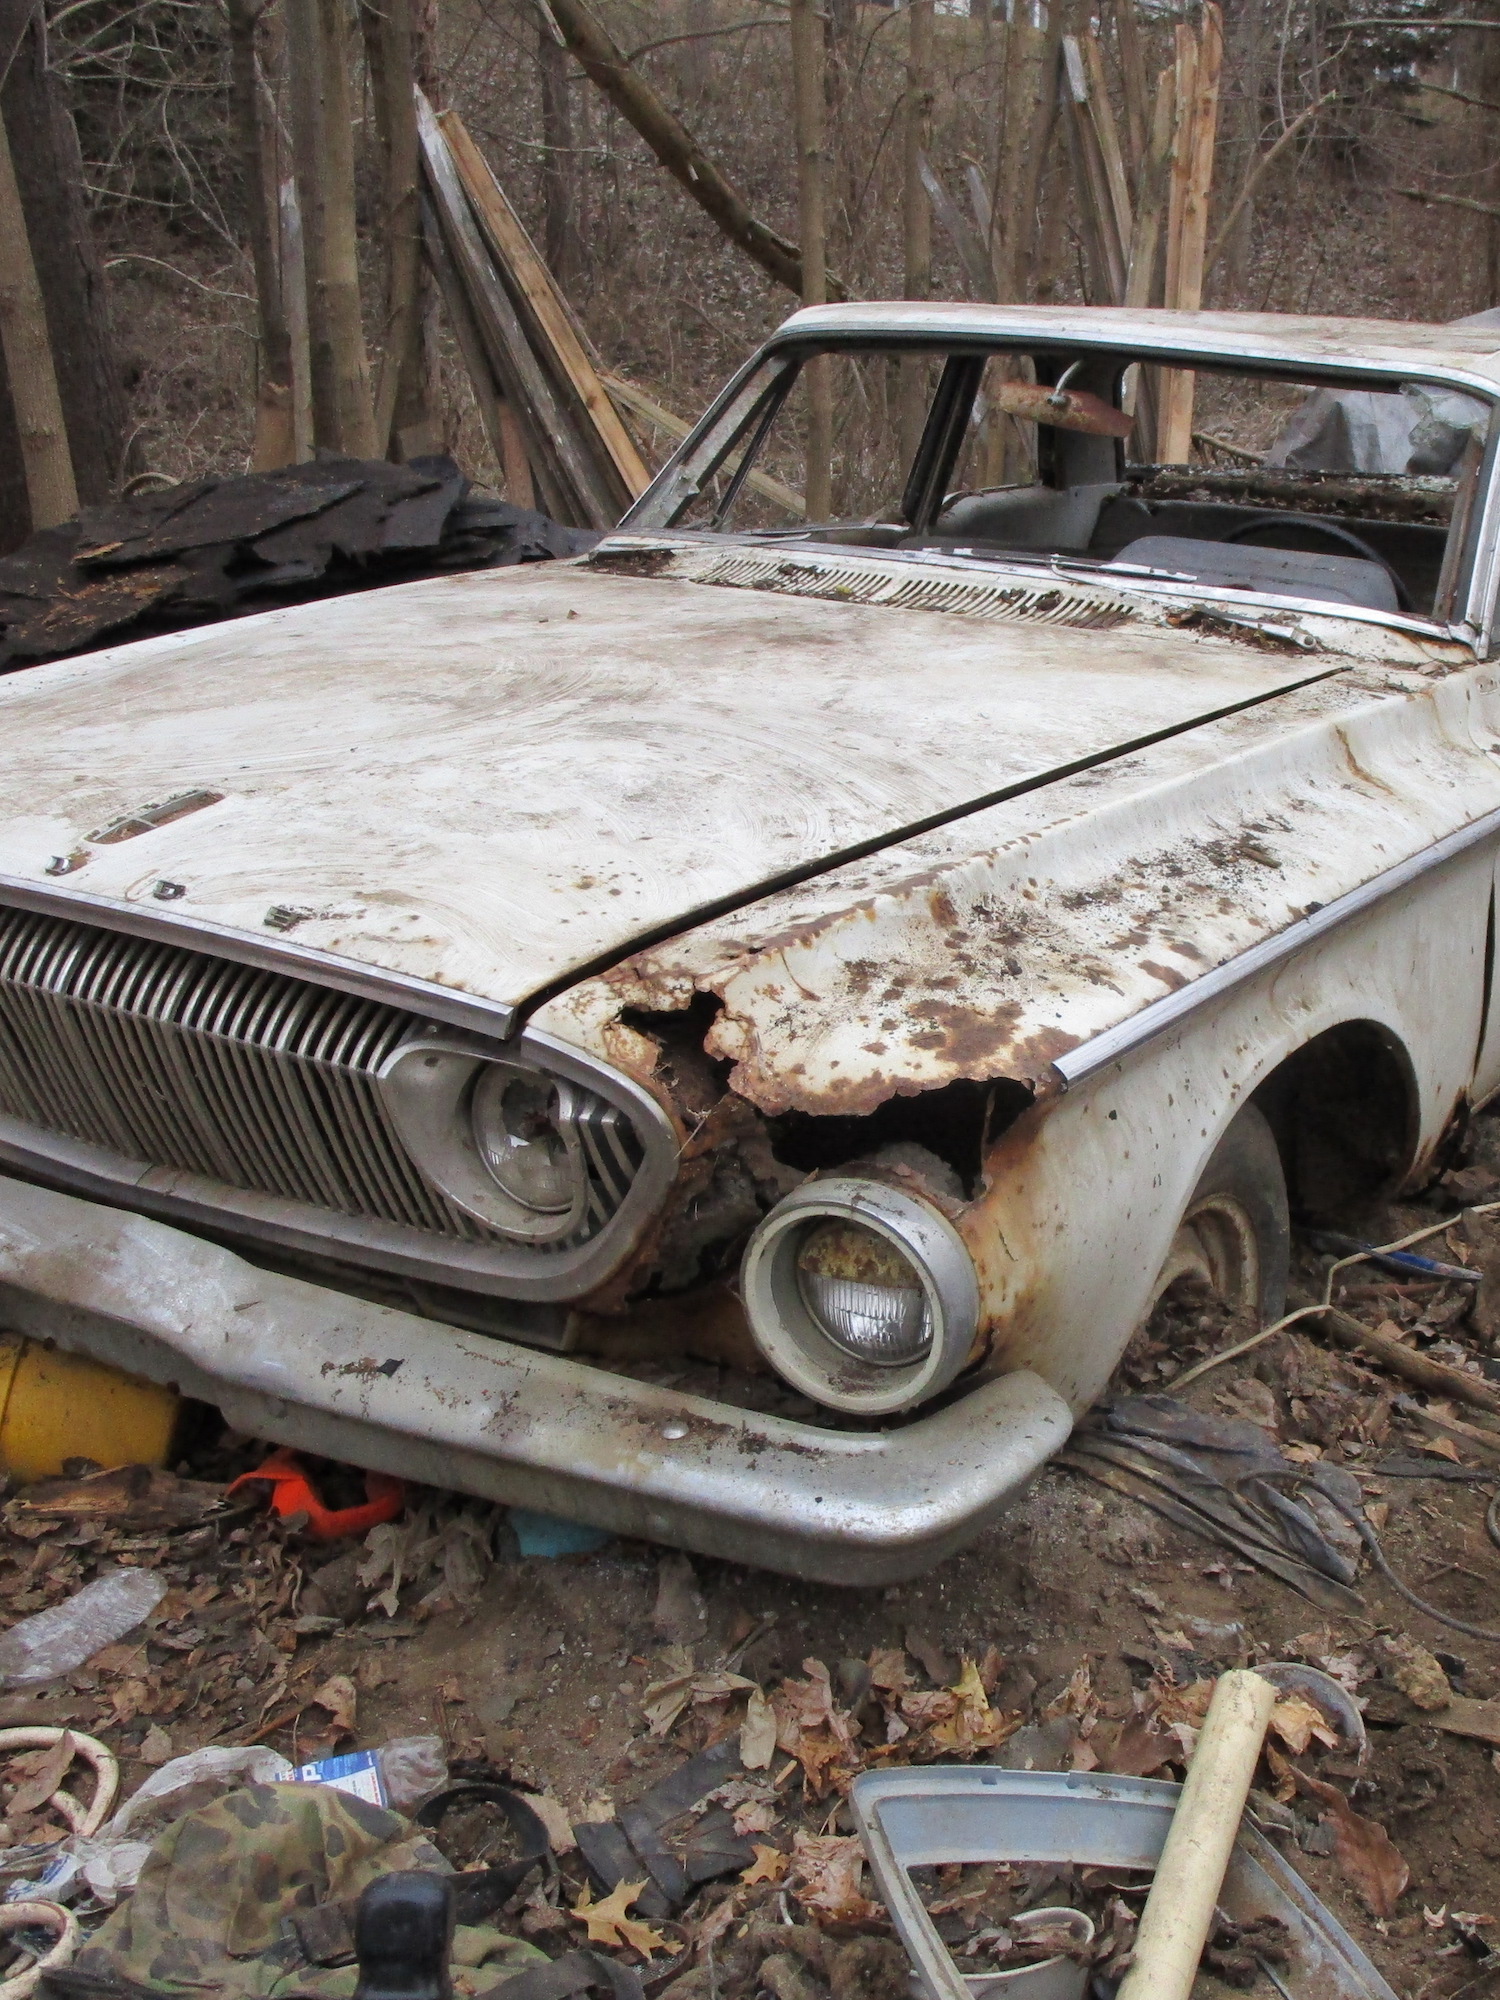 A white 1962 Dodge found at a barn demolition site in Michigan